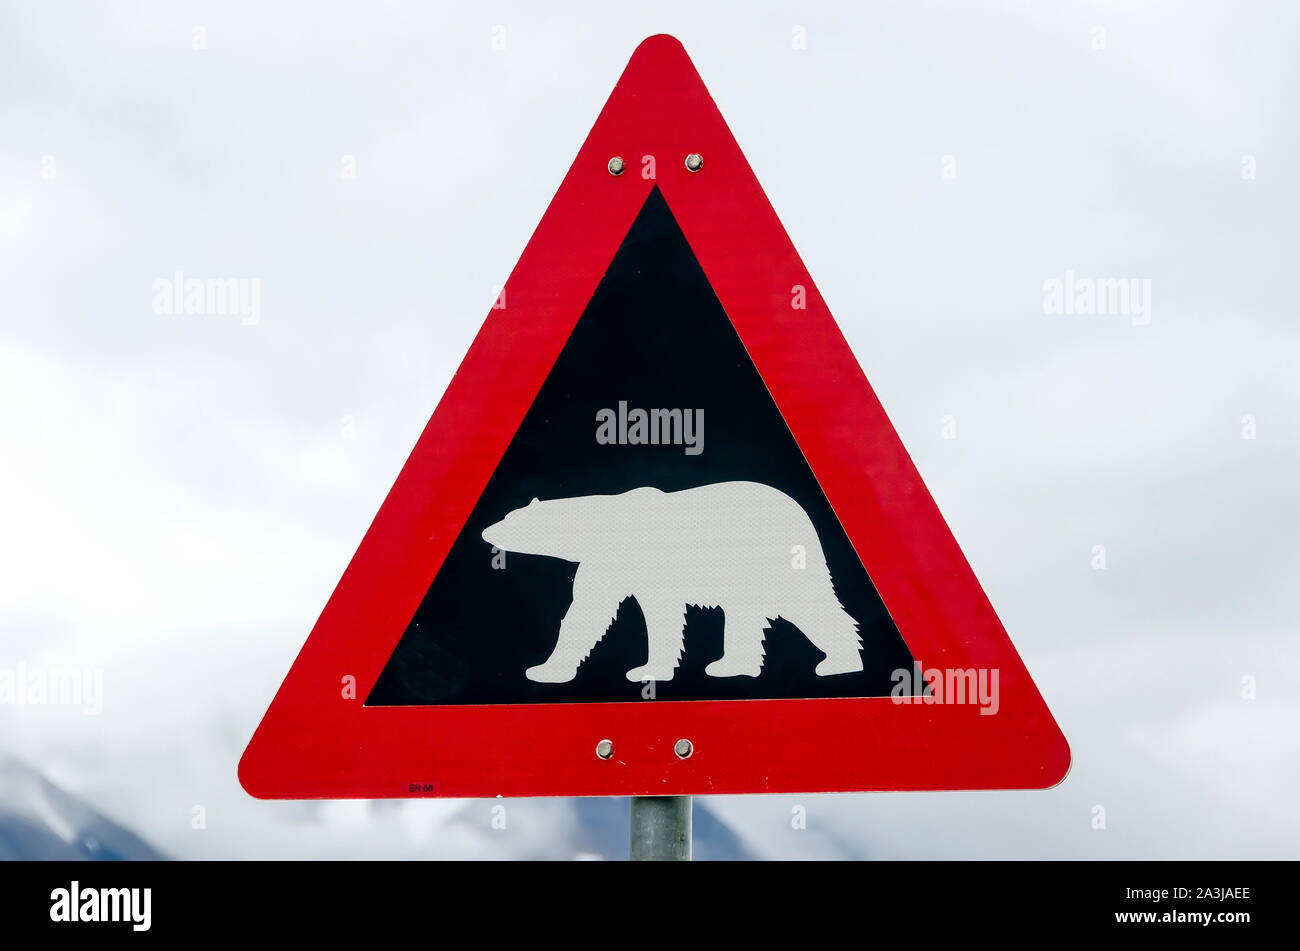 Orso polare in segno di avvertimento per tutti di Svalbard Longyearbyen, Norvegia Foto Stock